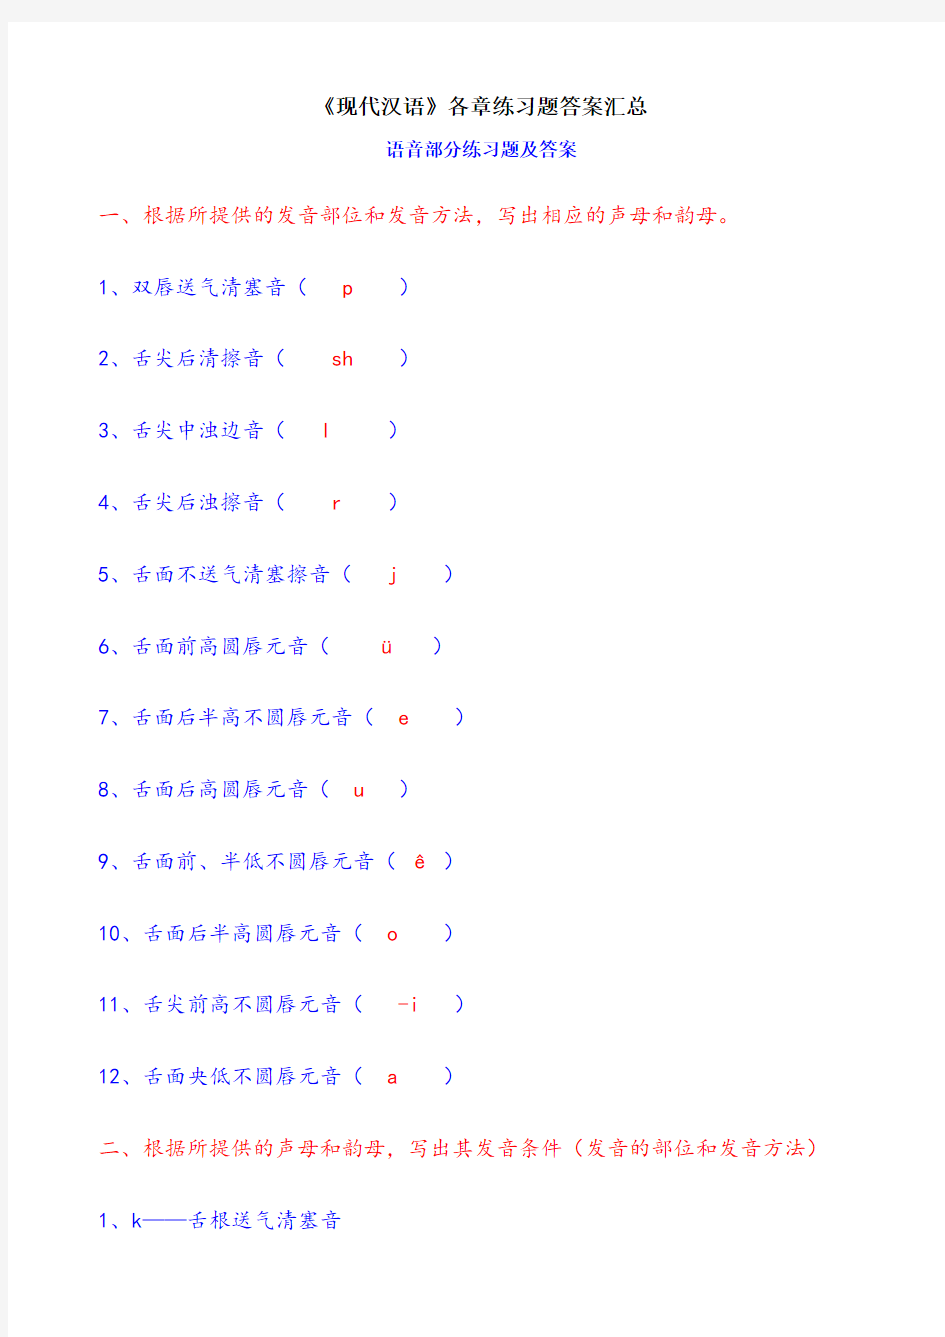 《现代汉语》各章练习题答案汇总